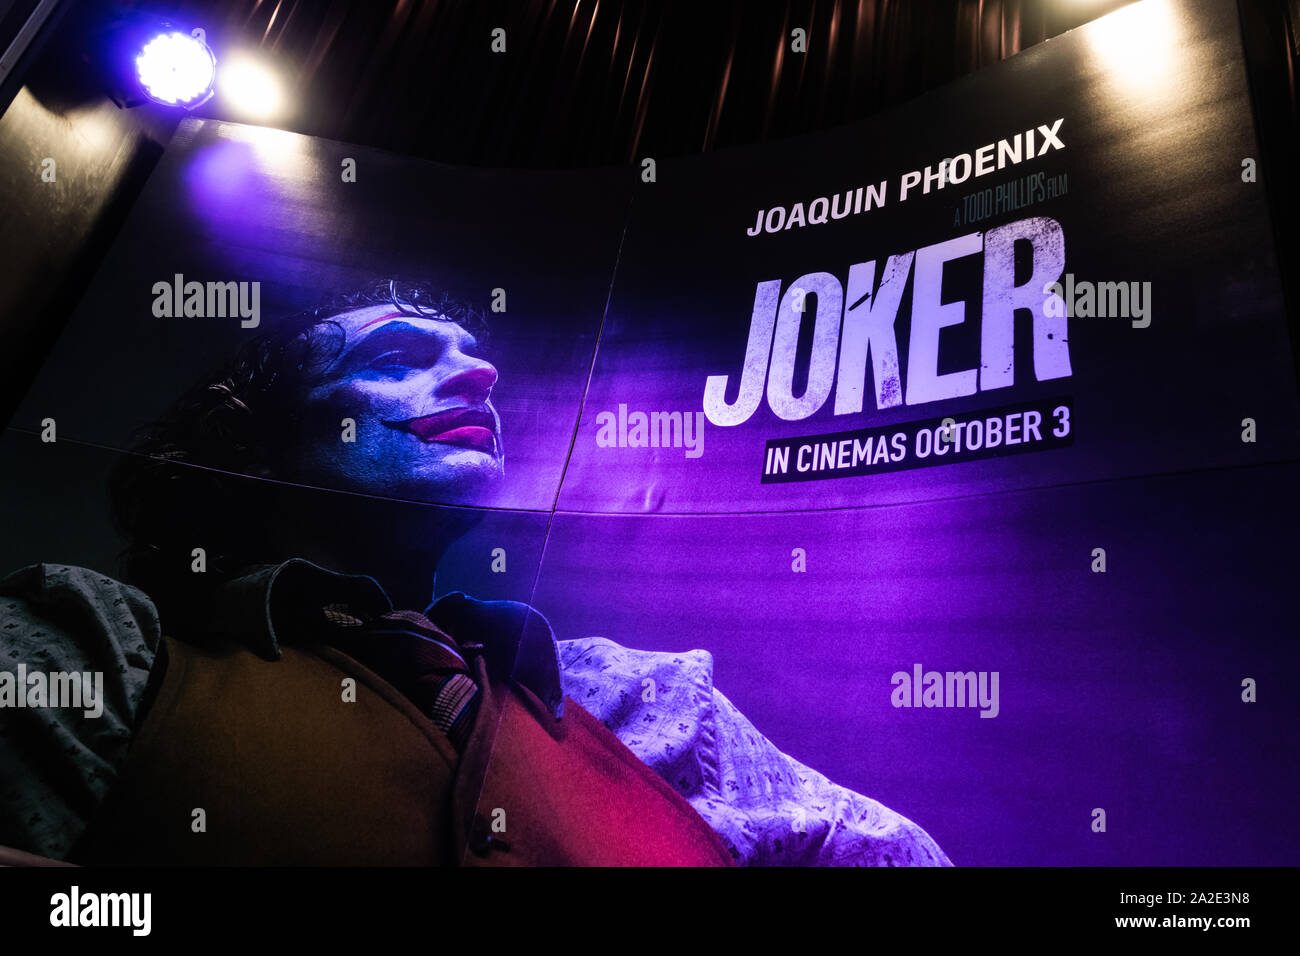 Bangkok, Thailandia - Ott 1, 2019: Joker film poster sullo sfondo con faretti che mostra in movie theater. Cinema pubblicità promozionale di concetto Foto Stock